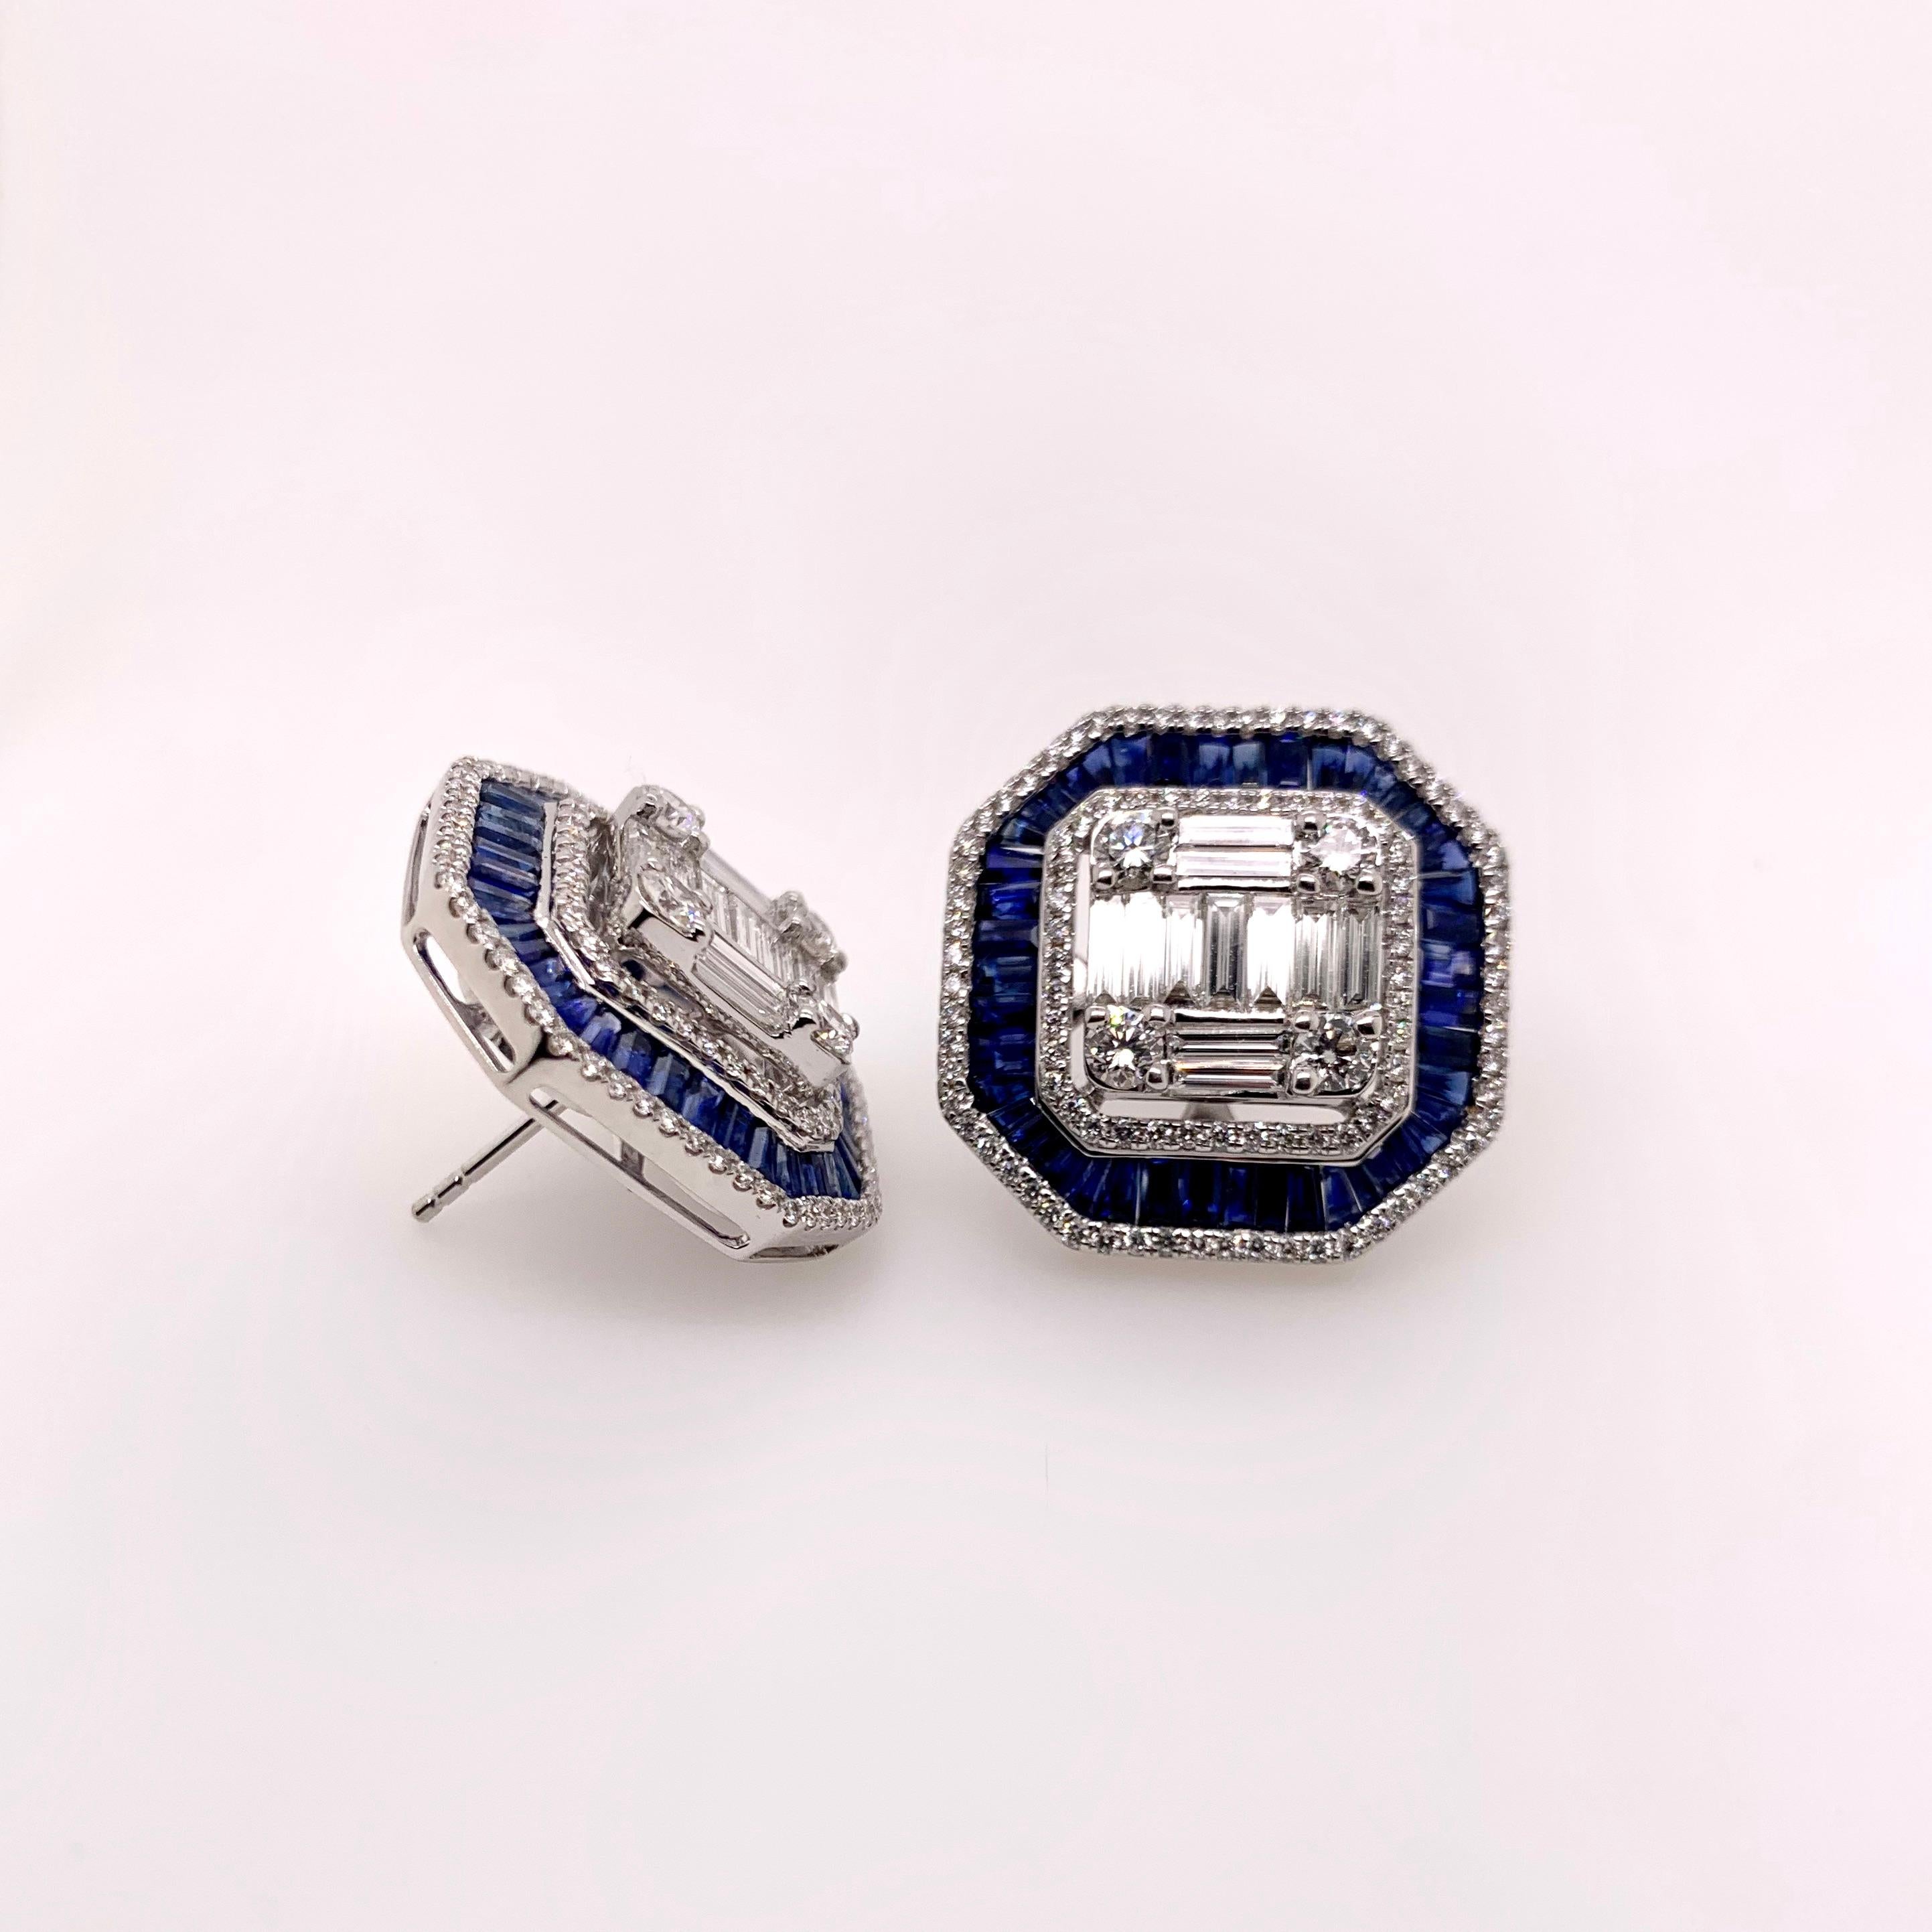 Dieses atemberaubende Paar blauer Saphir- und Diamantohrringe hat einen subtilen Vintage-Charme.  Er ist sorgfältig mit runden Brillanten und Baguette-Diamanten gearbeitet, die das Fundament des Ohrrings bilden, während der blaue Saphir sorgfältig